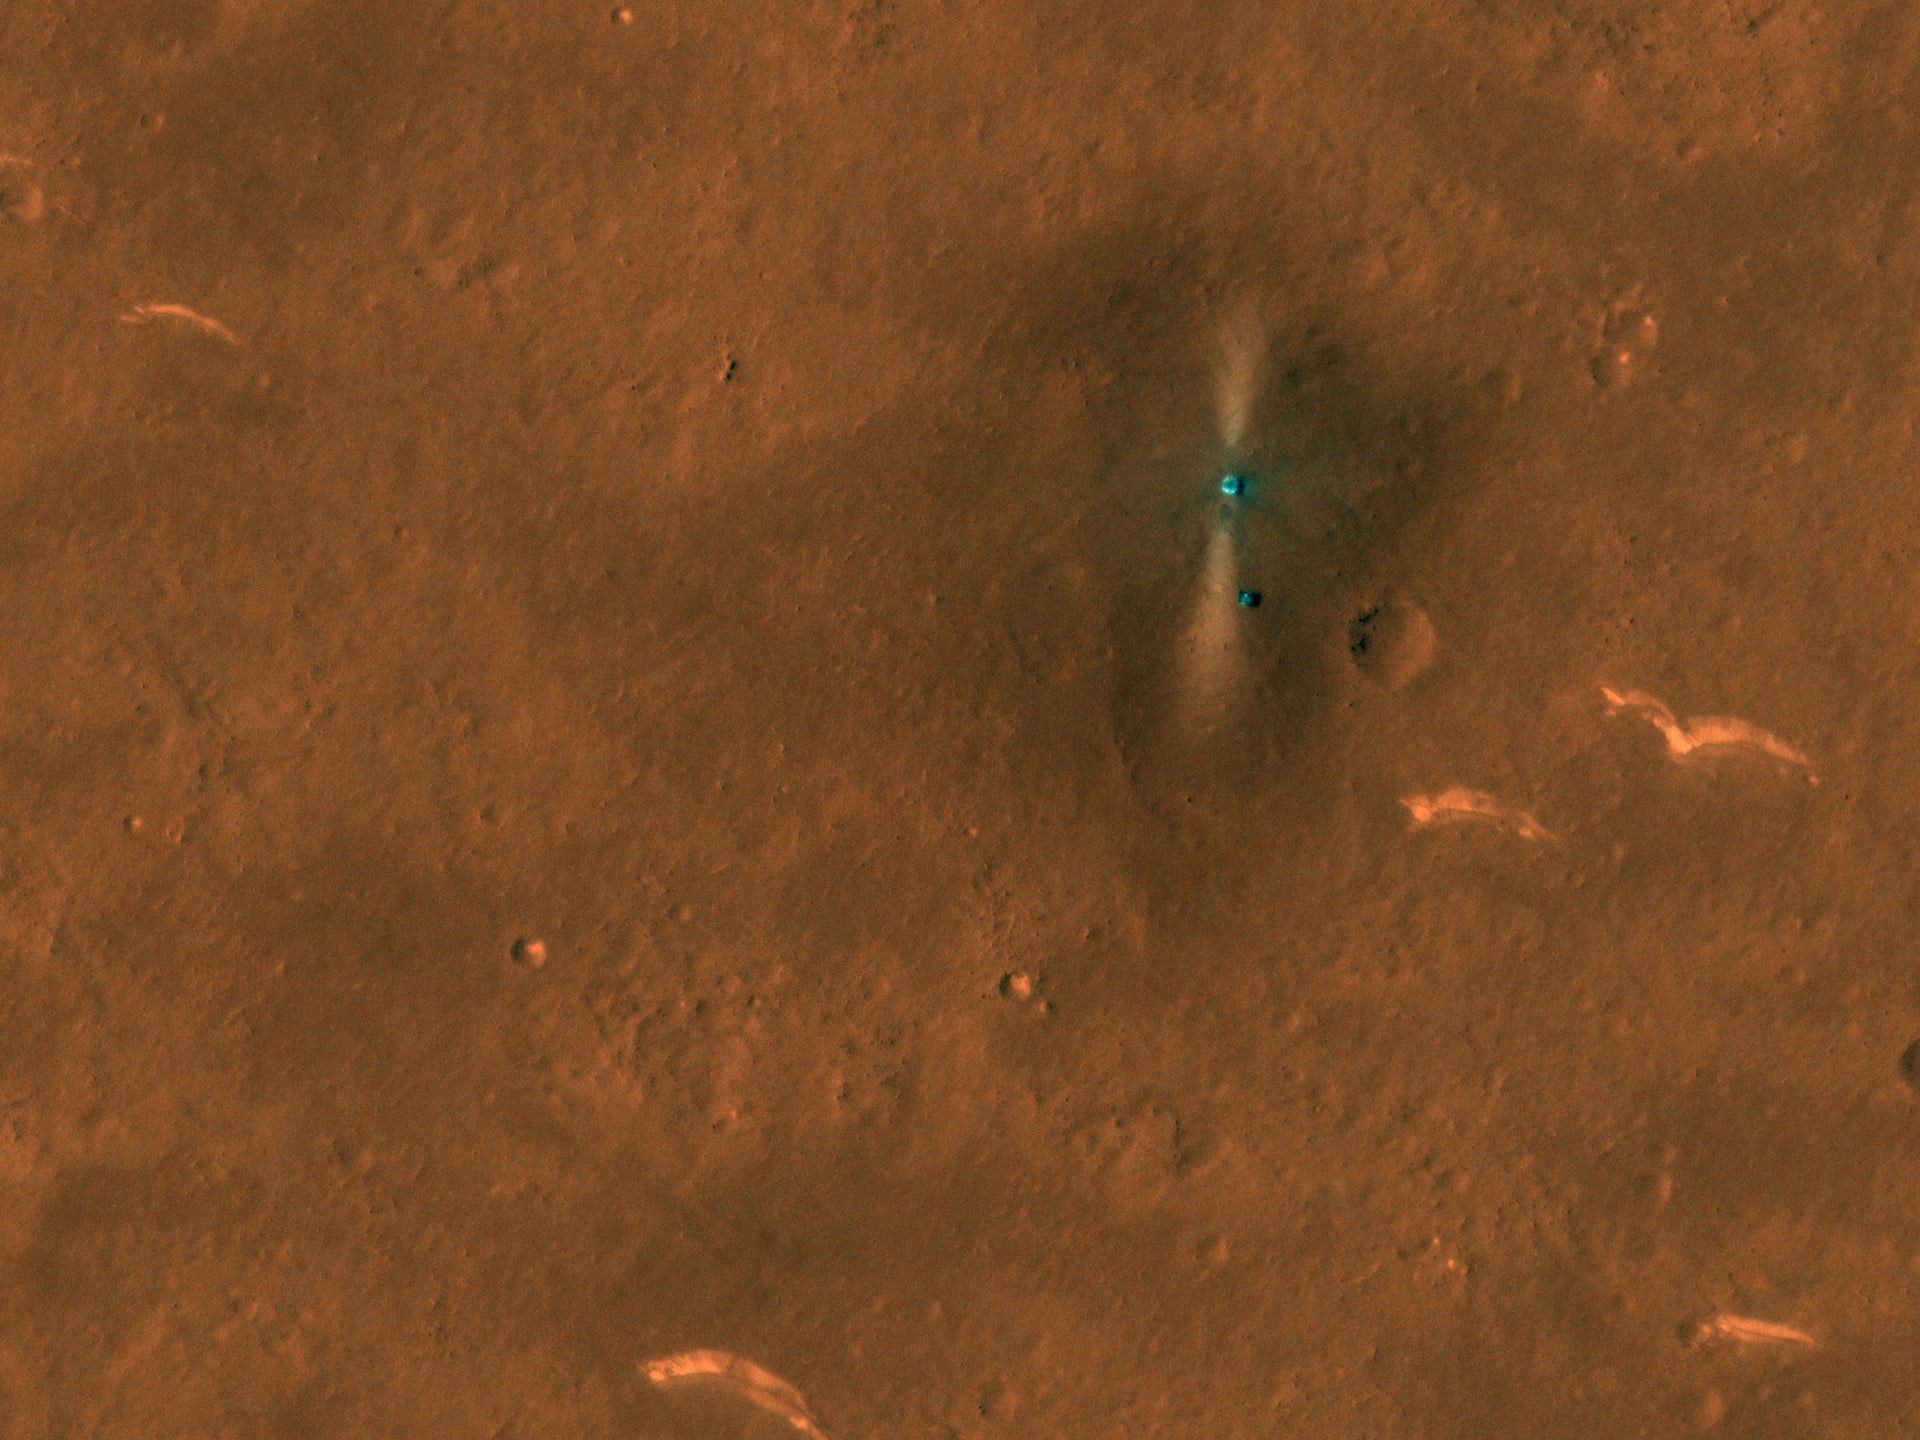 Tο Mars Reconnaissance Orbiter φωτογραφιζει το “ Ζου-Ρογκ ” στο εδαφος